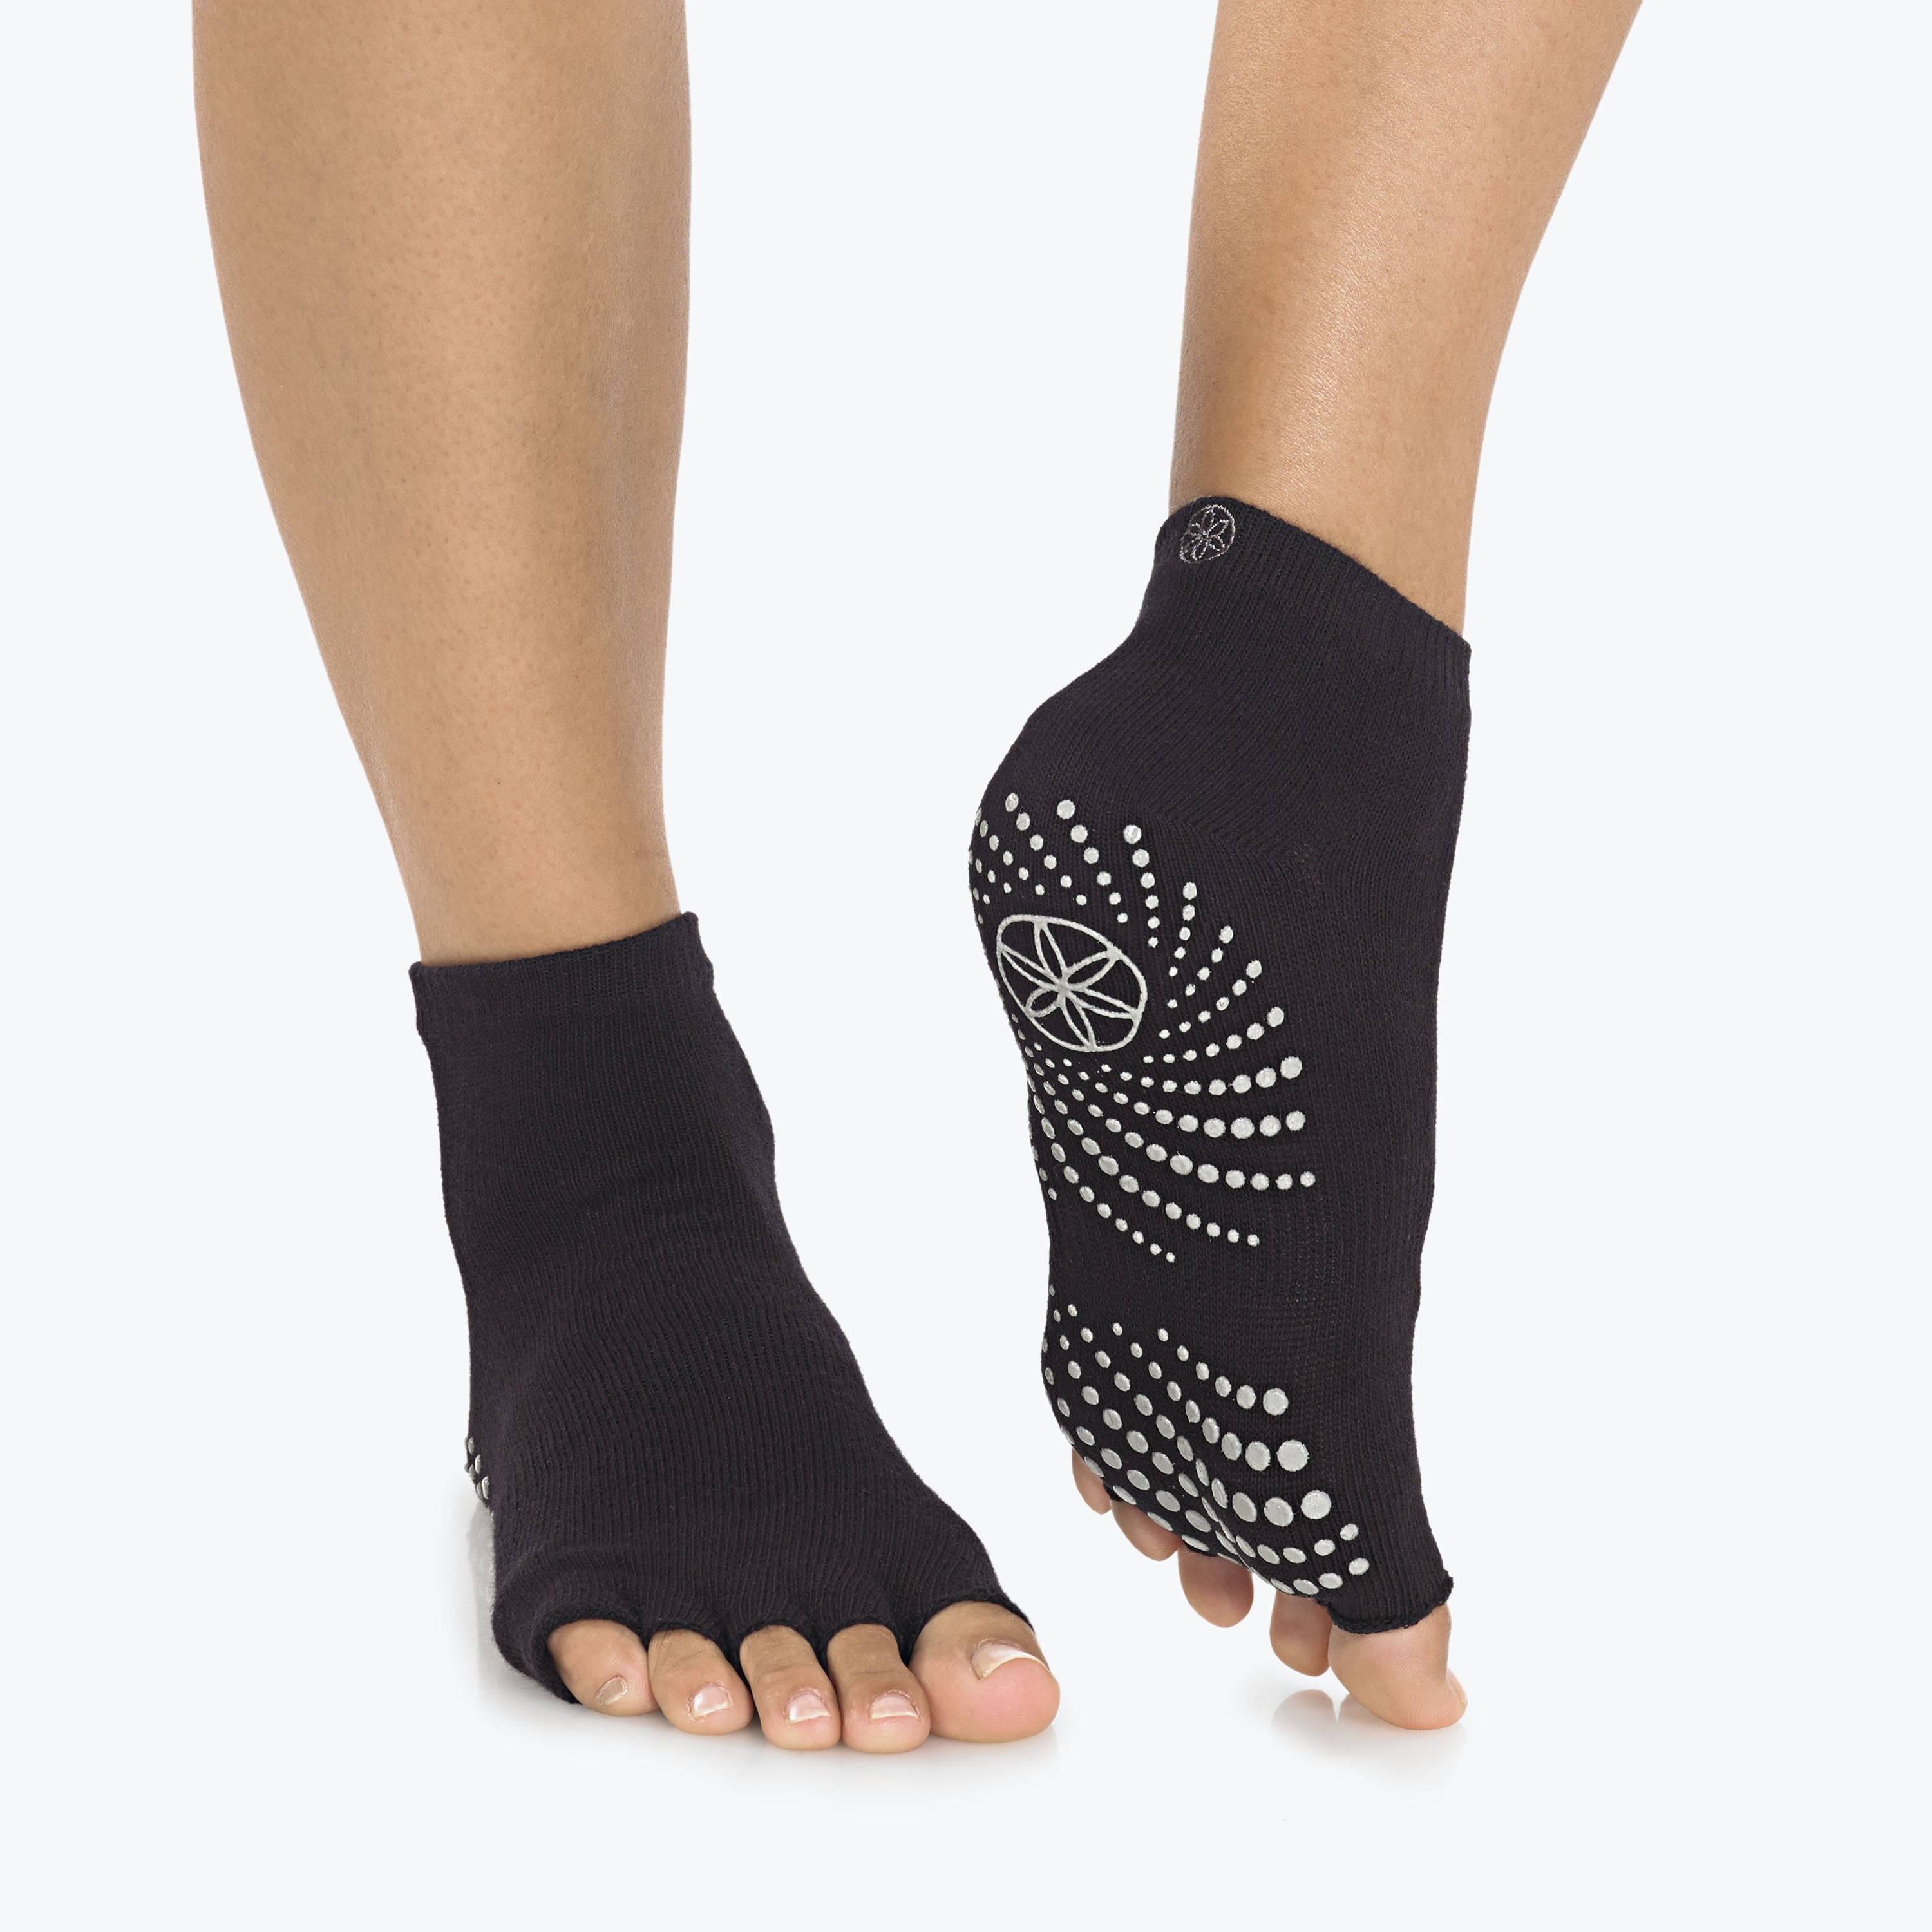 Gaiam Yoga Socks - Toeless Grippy Non Slip Sticky Grip Accessories for Women & Men 2pk